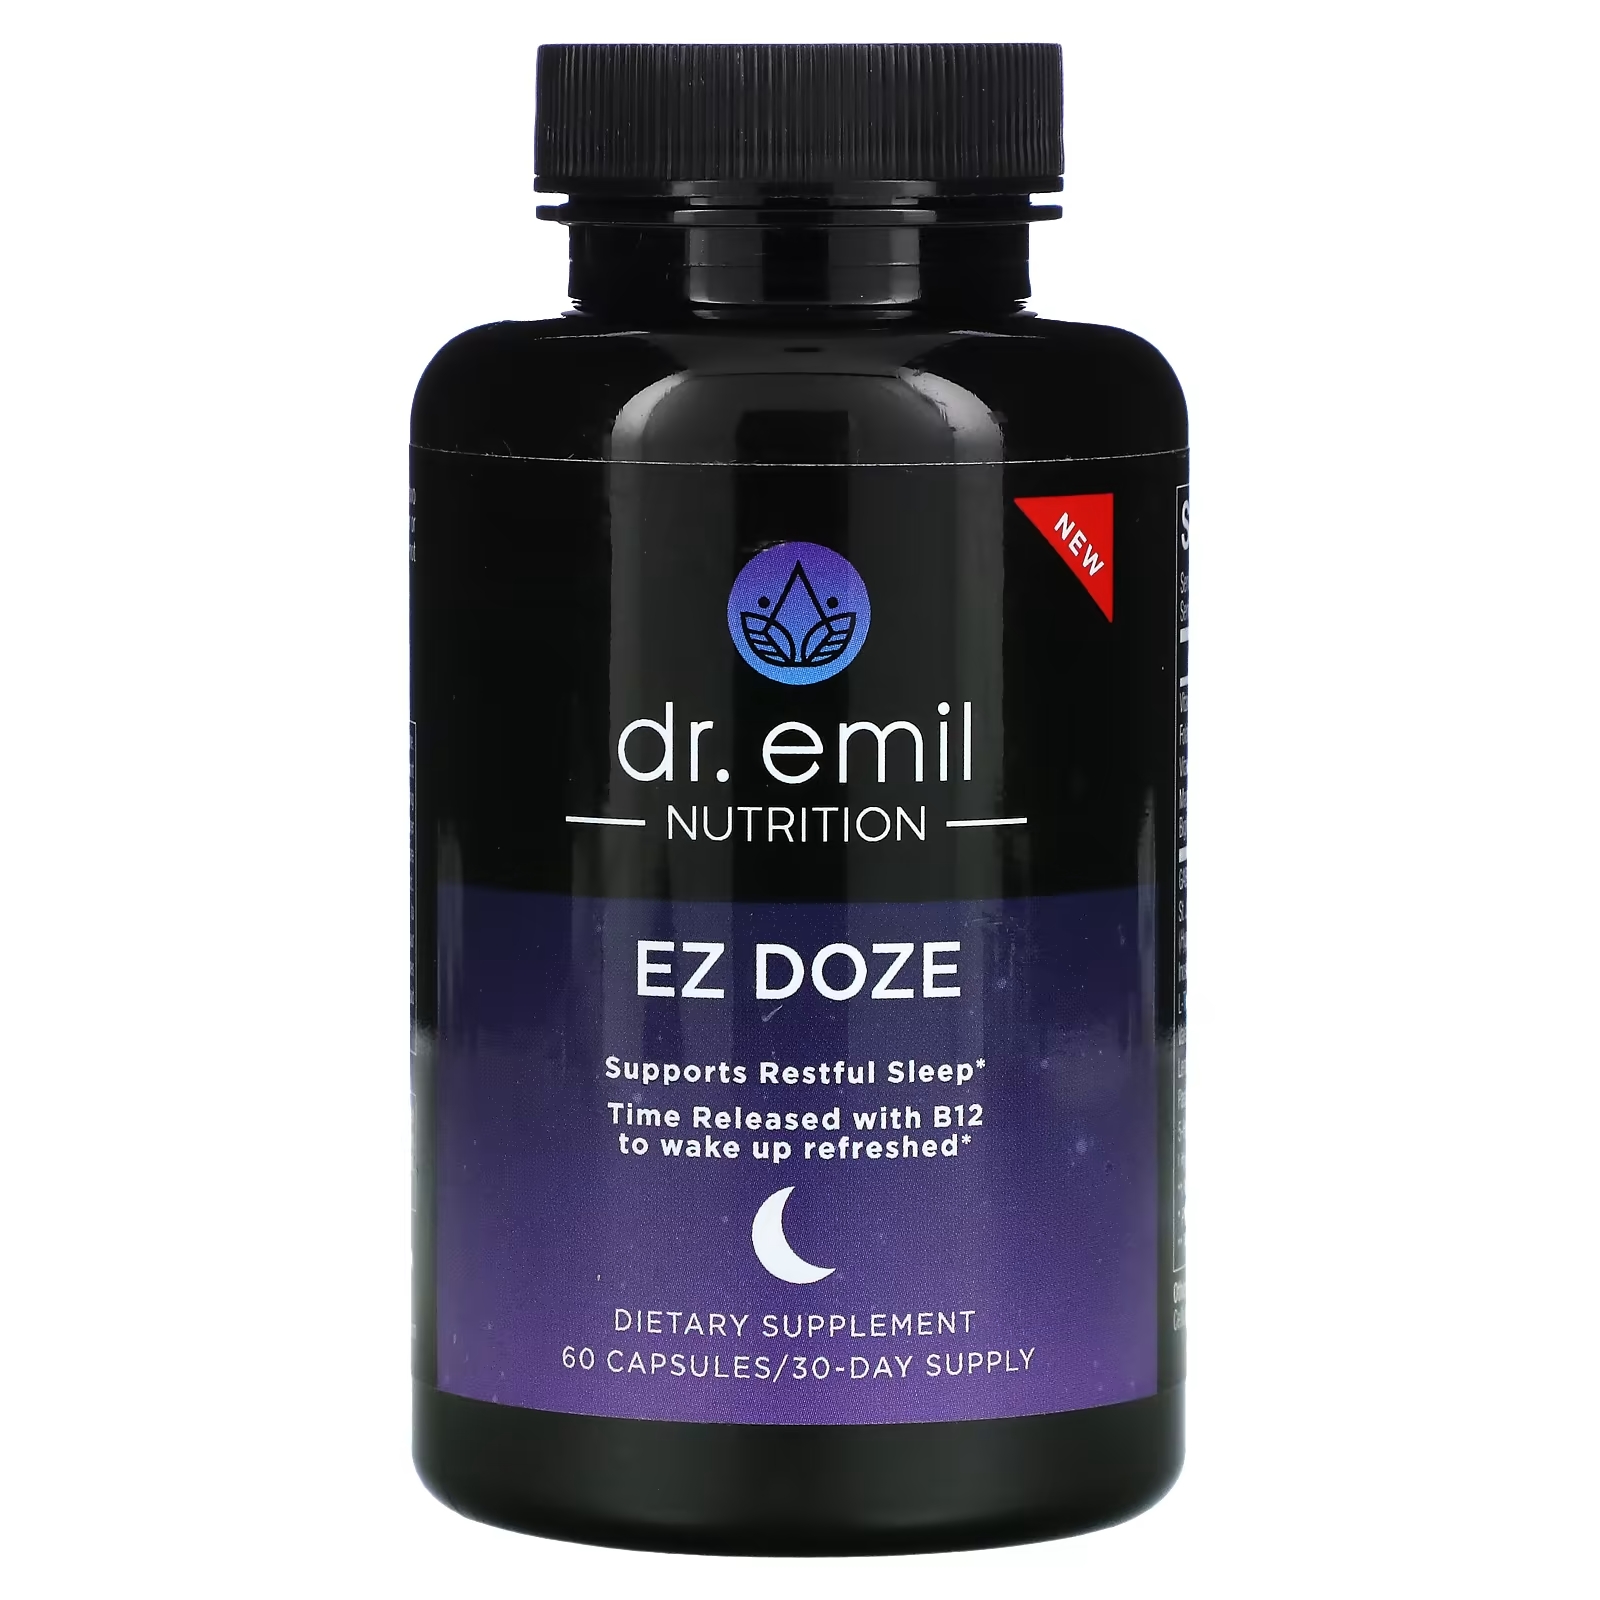 Dr Emil Nutrition EZ DOZE, 60 капсул dr emil nutrition от ожогов перед сном 60 капсул